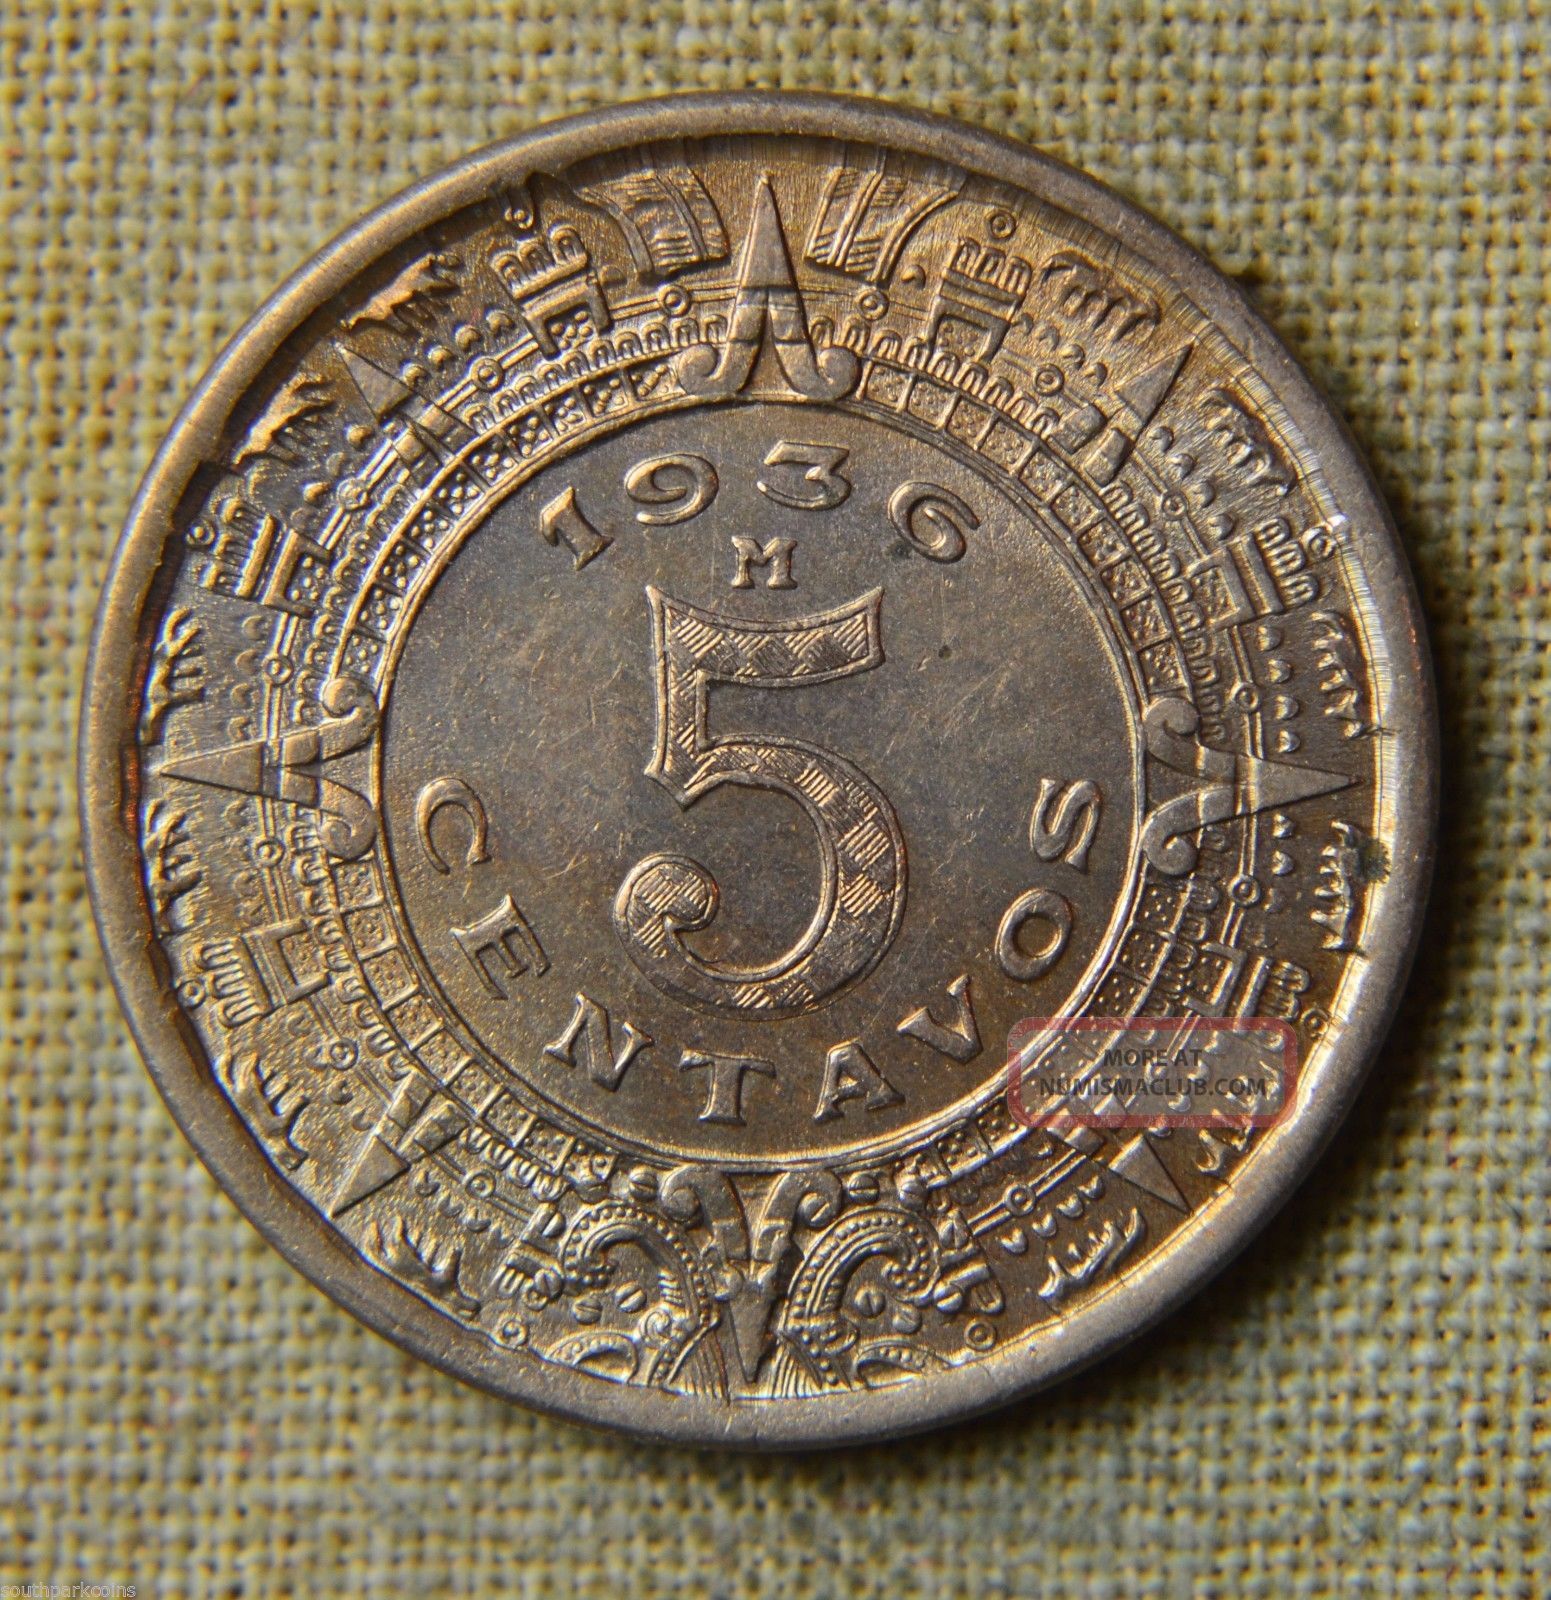 1936 5 centavos mexican coin